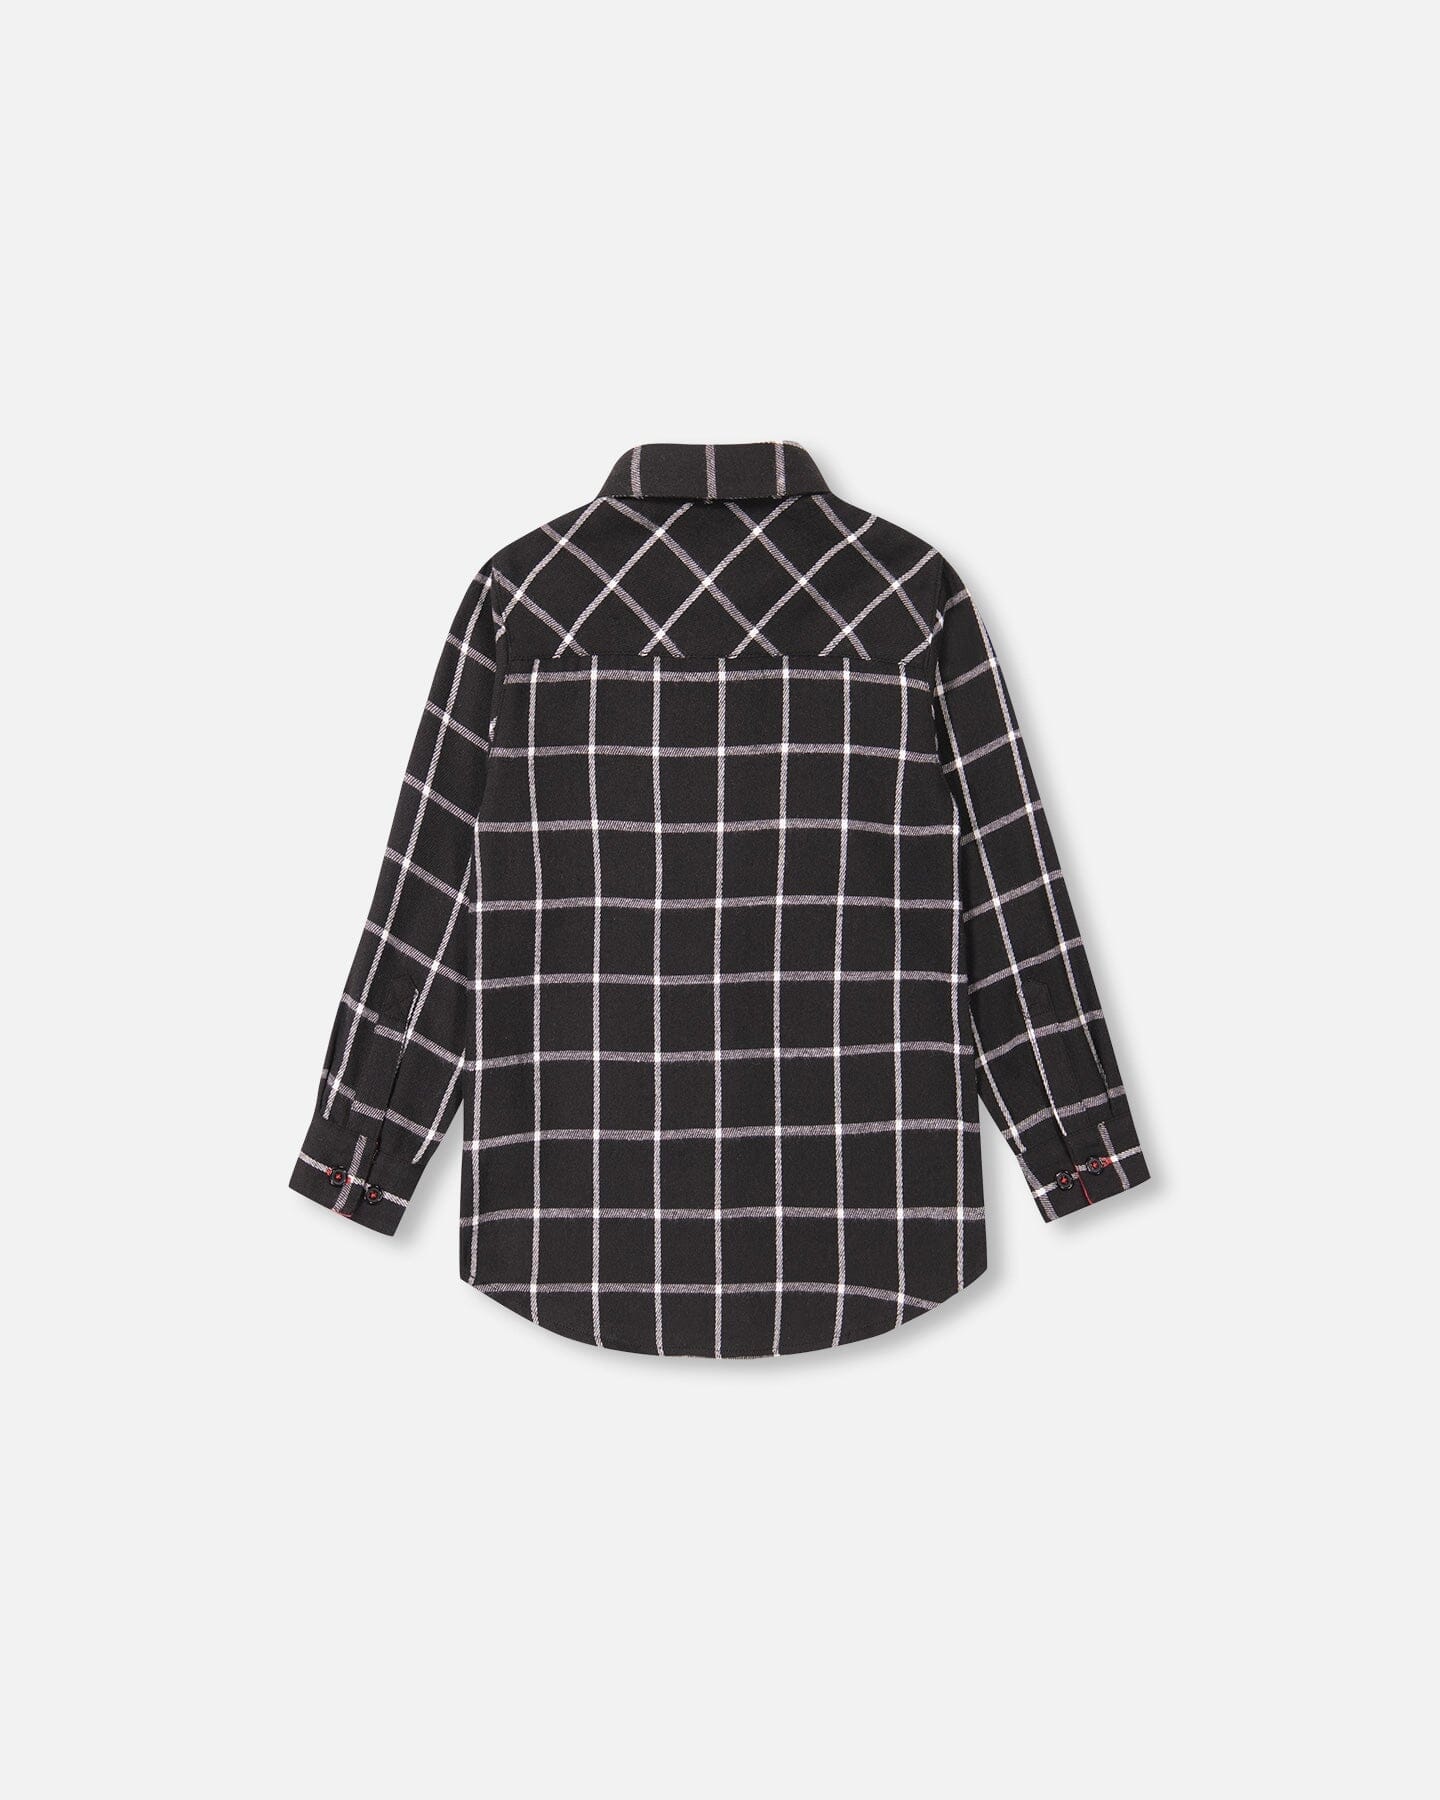 Flannel Shirt Black Plaid - F20NB15_000